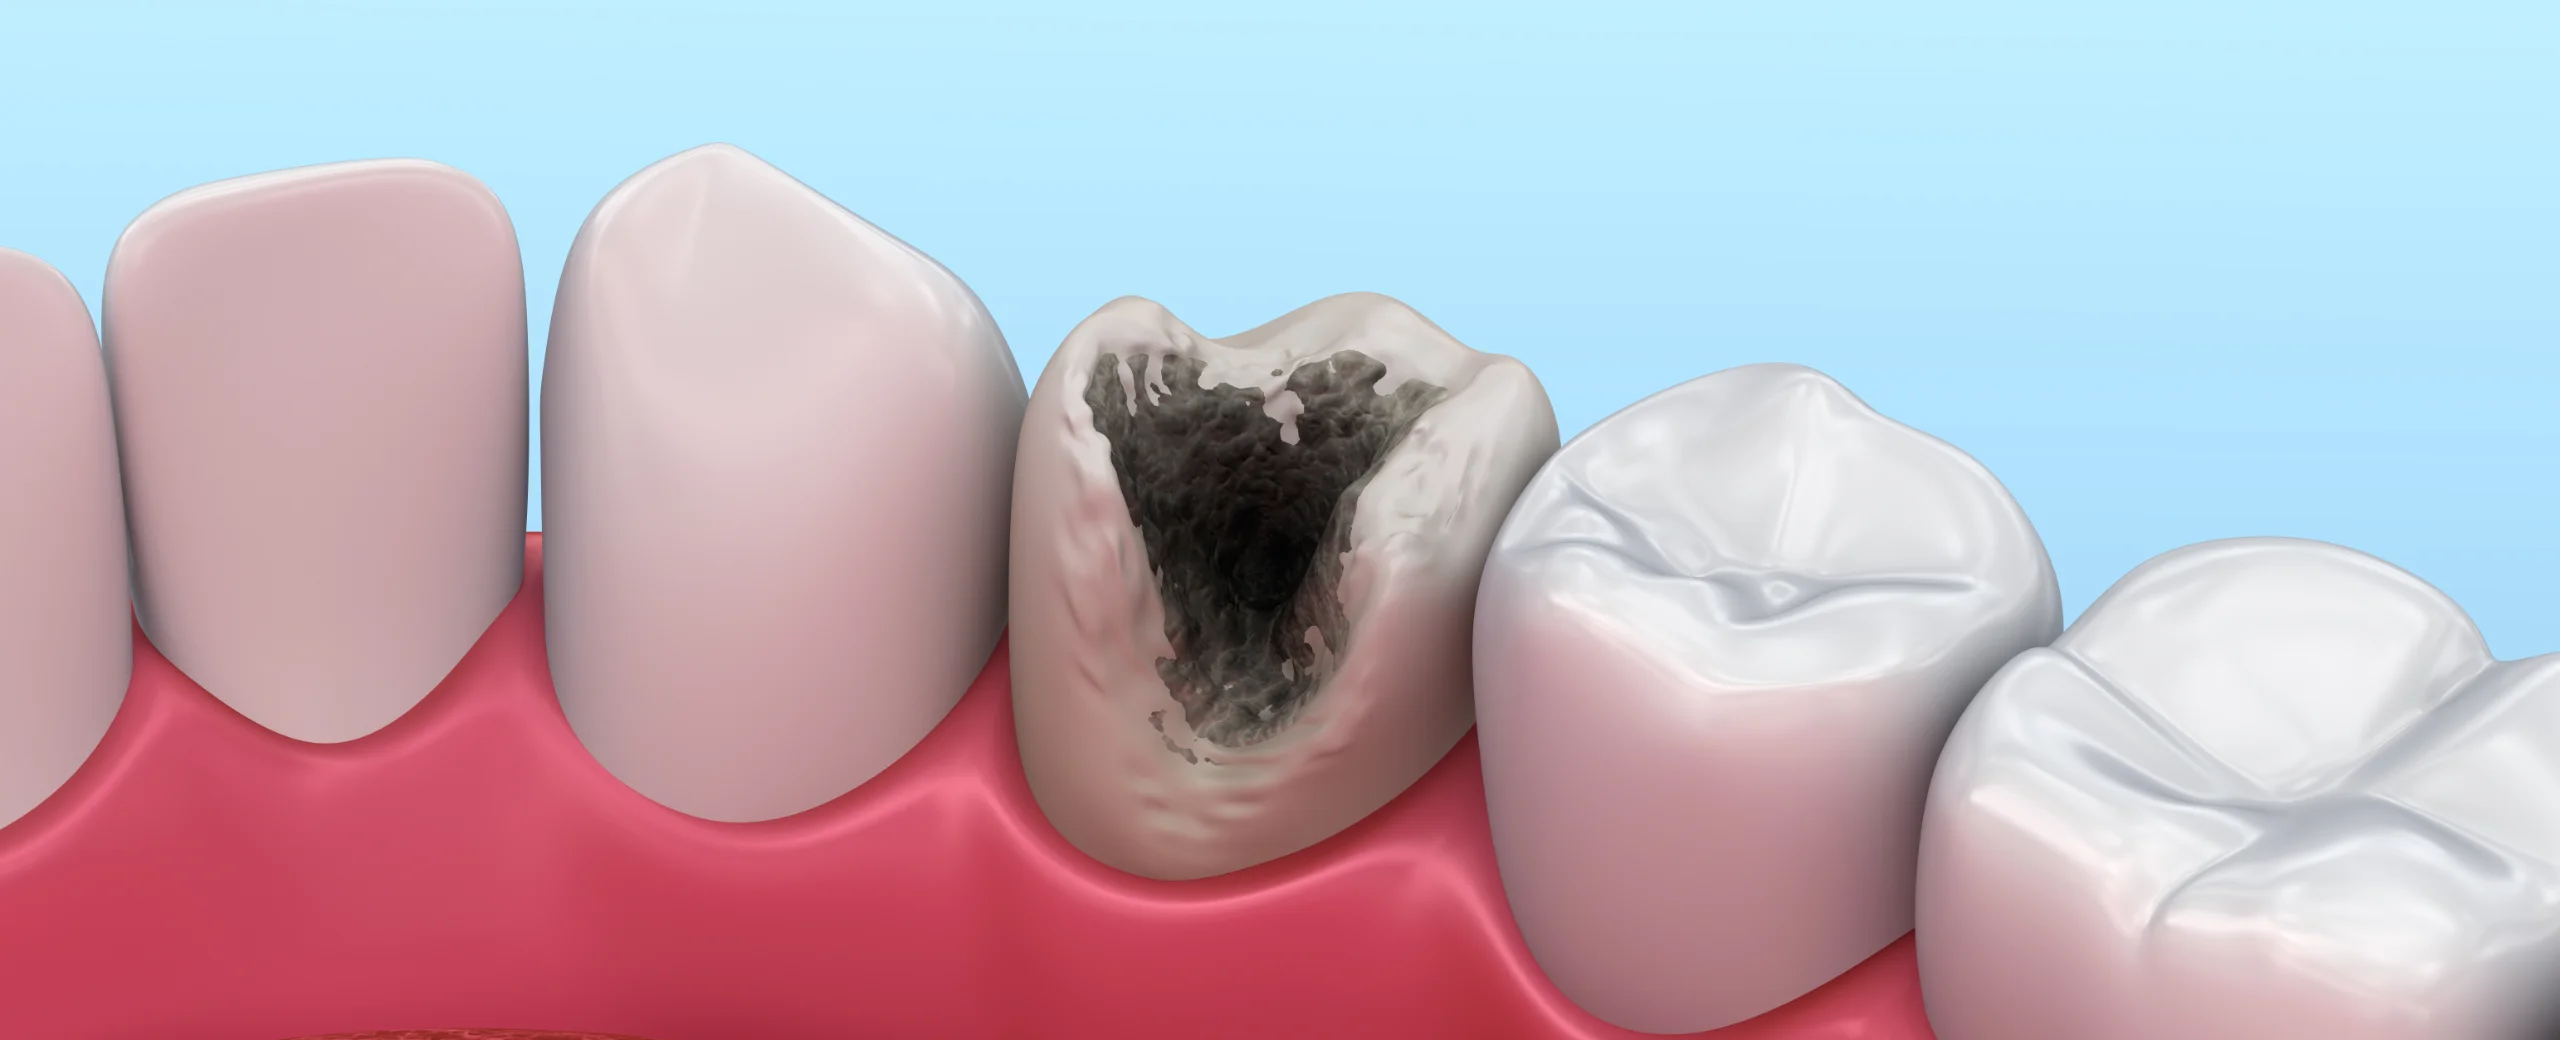 Pulpitis – Wenn der Zahnschmerz zur Qual wird